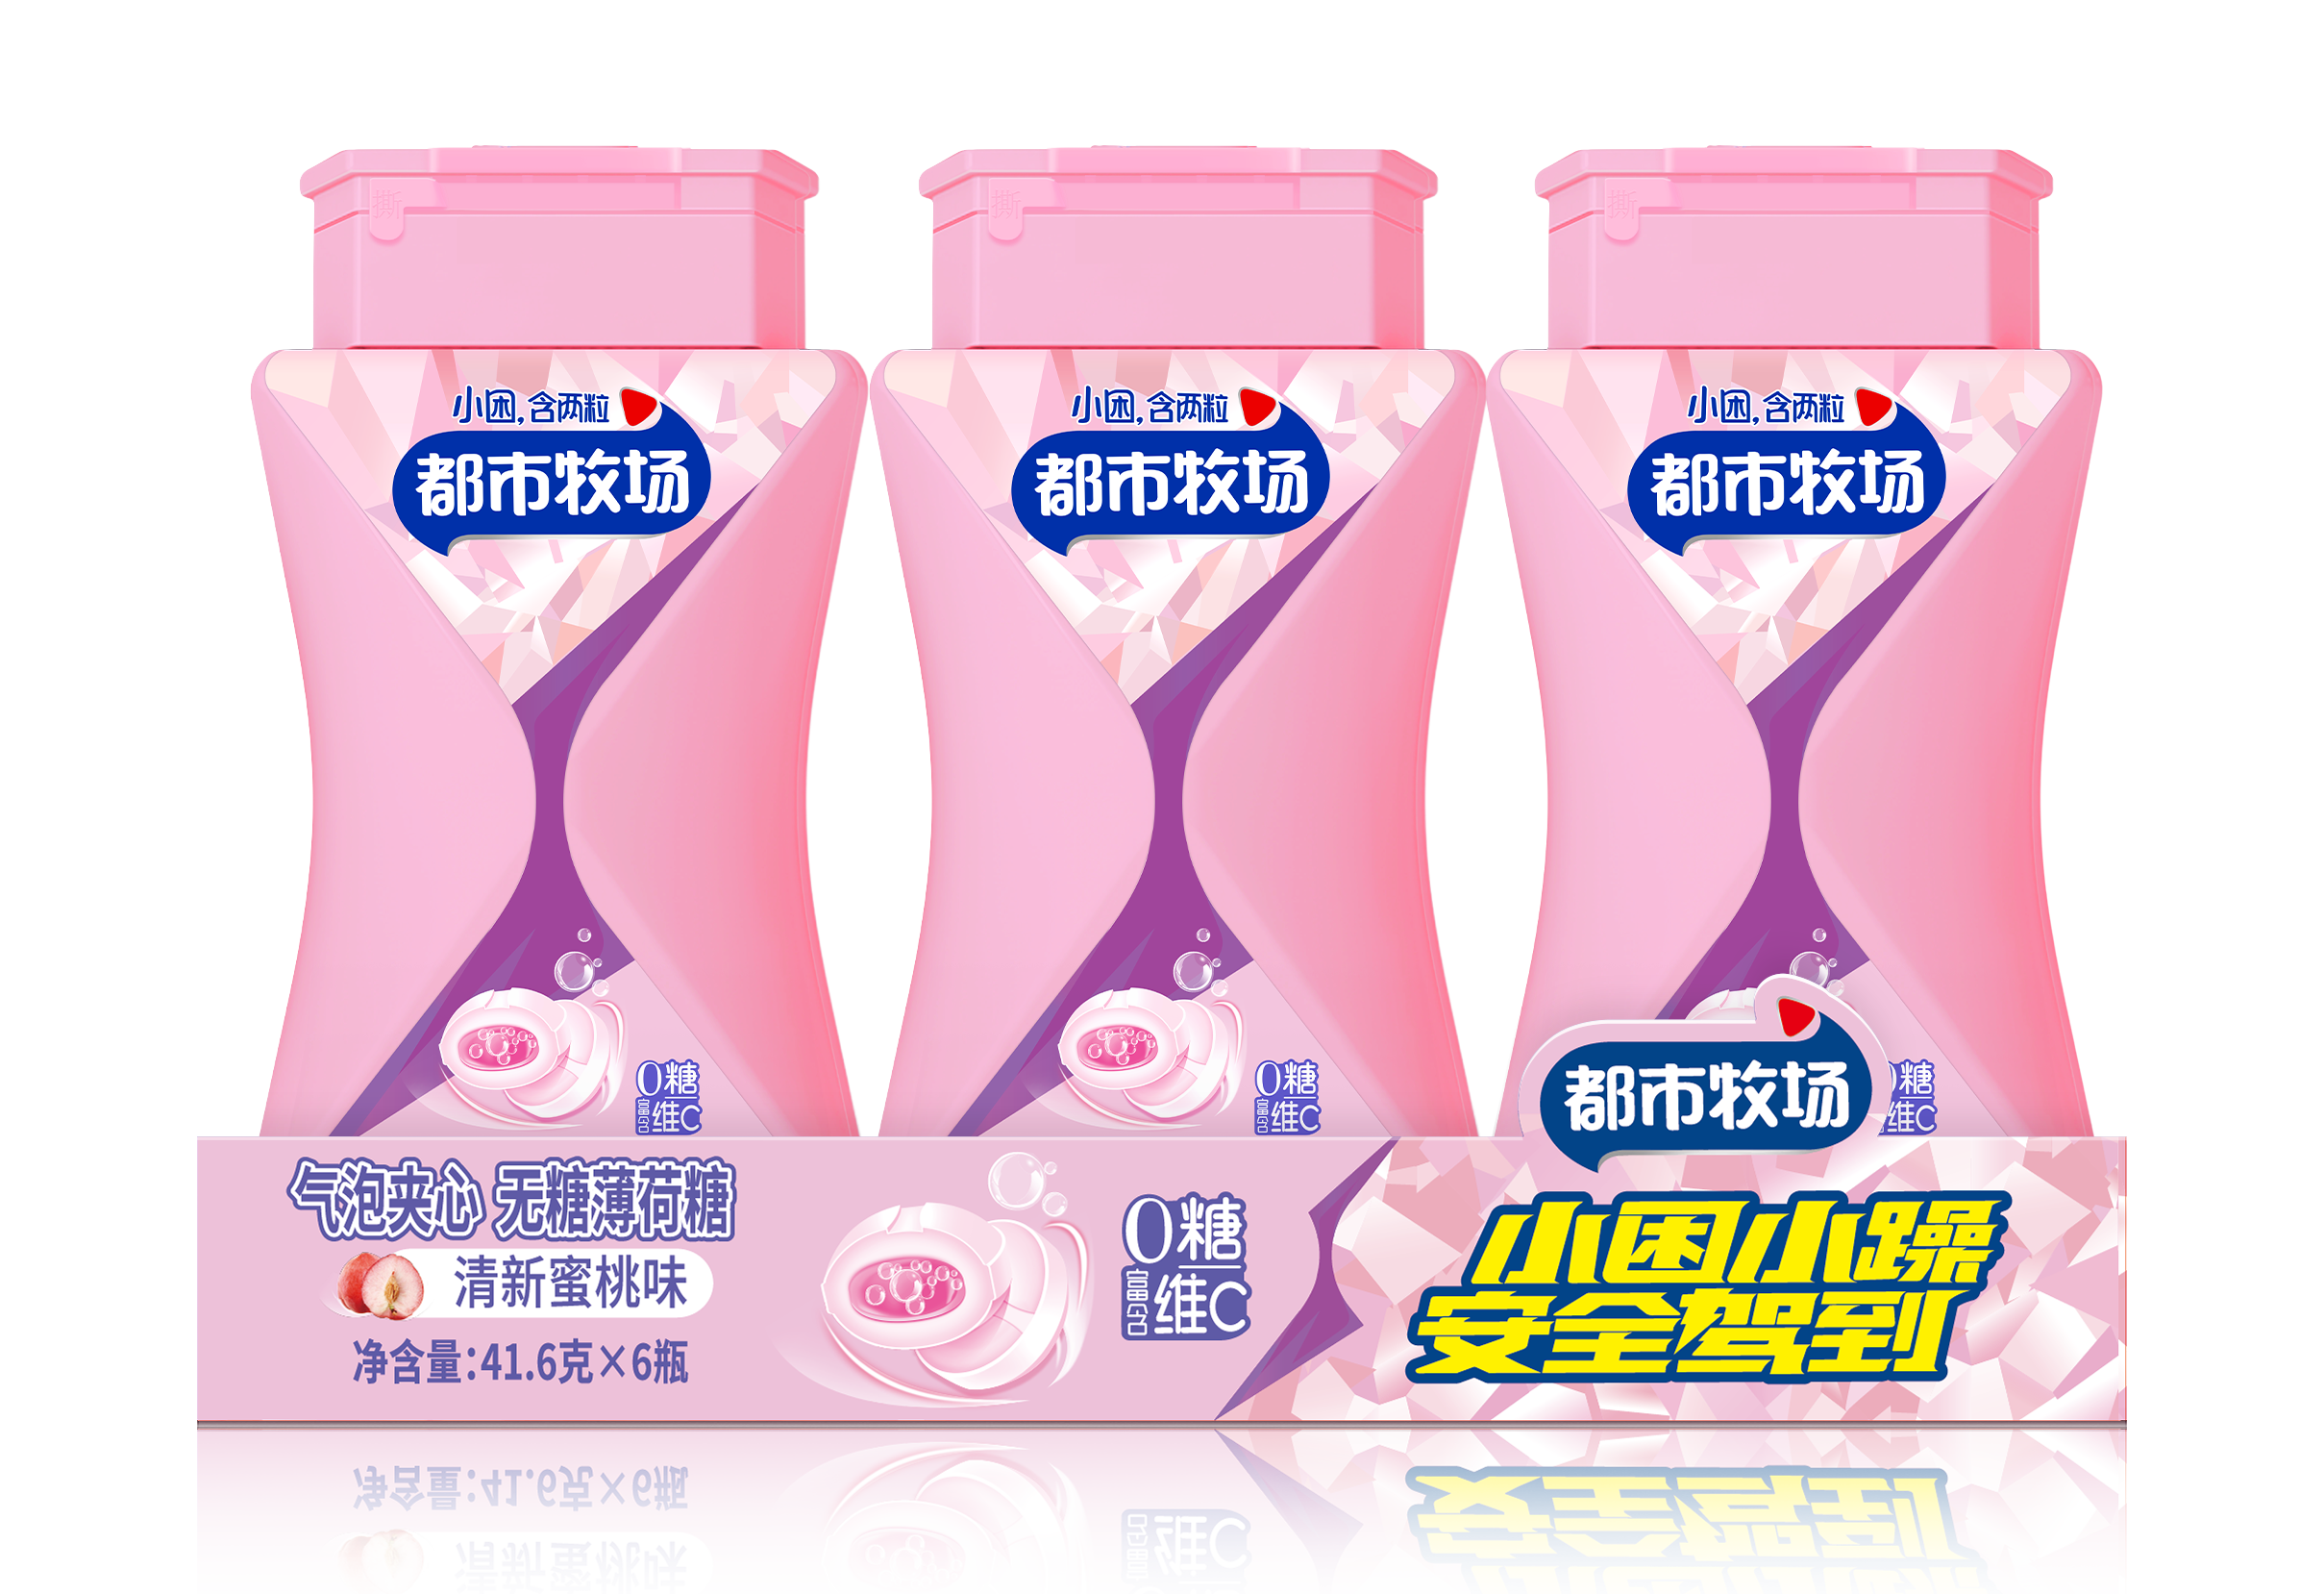 Marques de bonbons à la menthe en Chine Menthes vitaminées sans sucre personnalisées Bonbons pétillants Fournisseur de bonbons plus sains